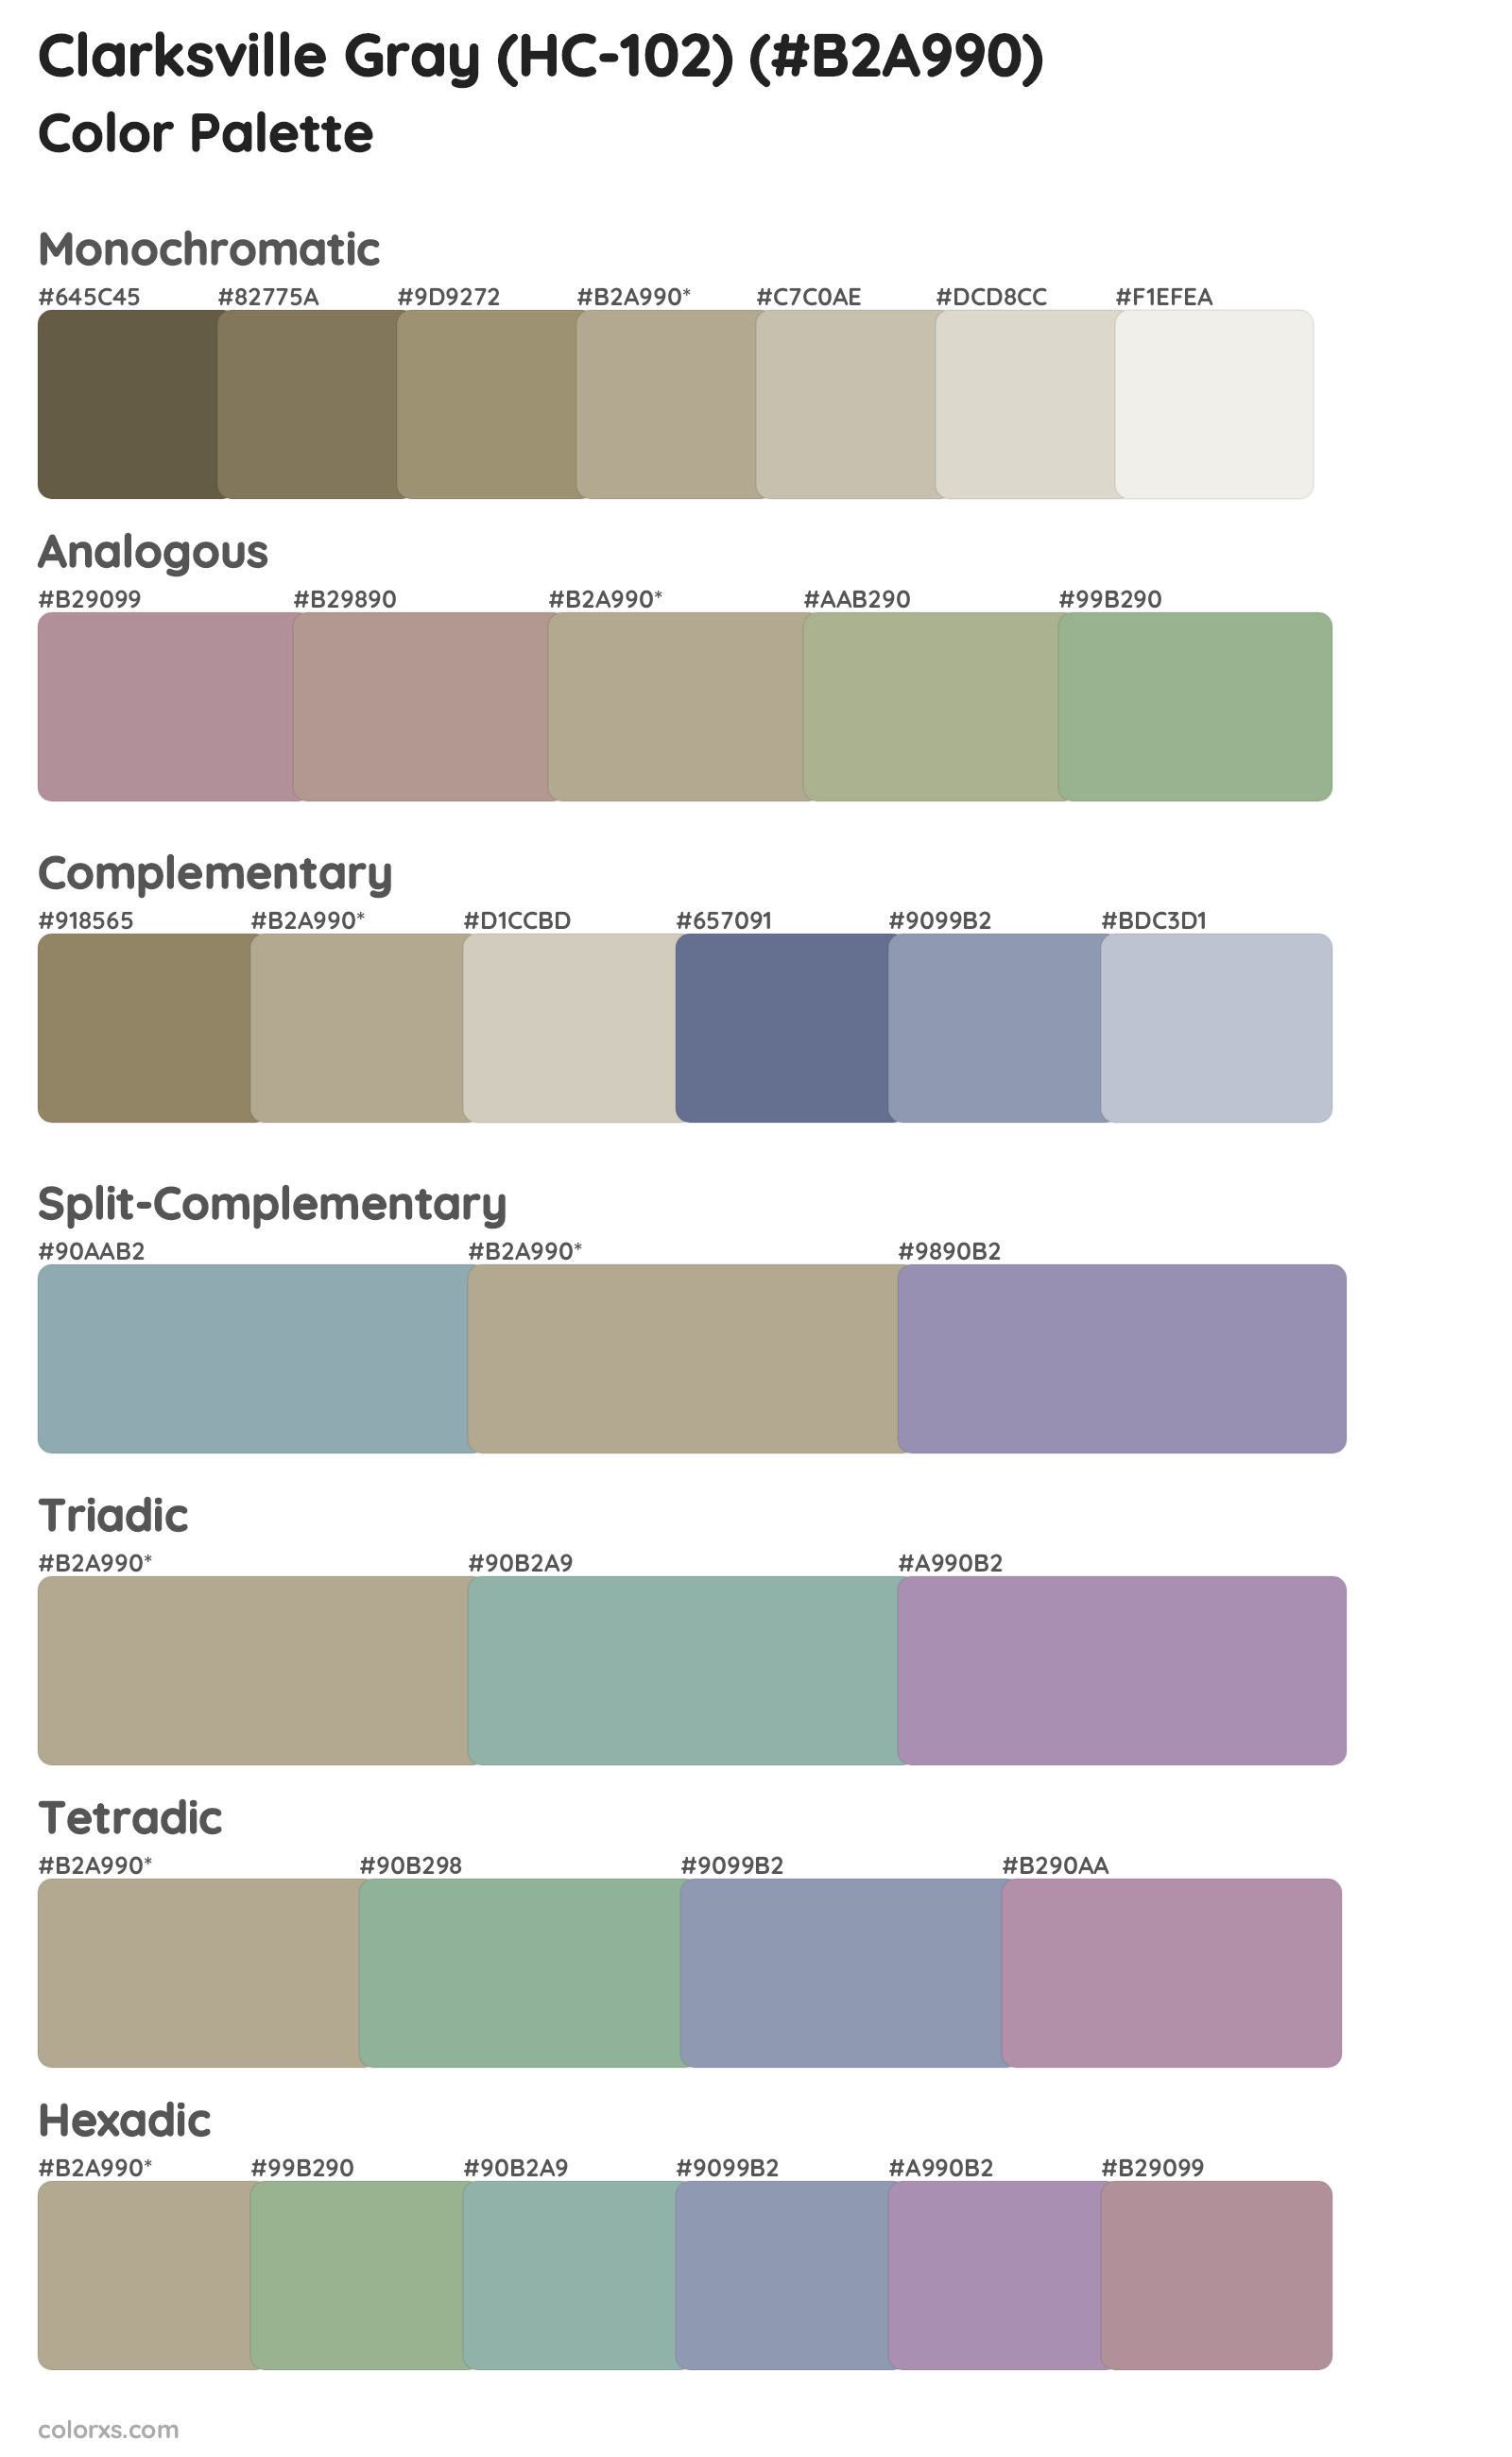 Clarksville Gray (HC-102) Color Scheme Palettes